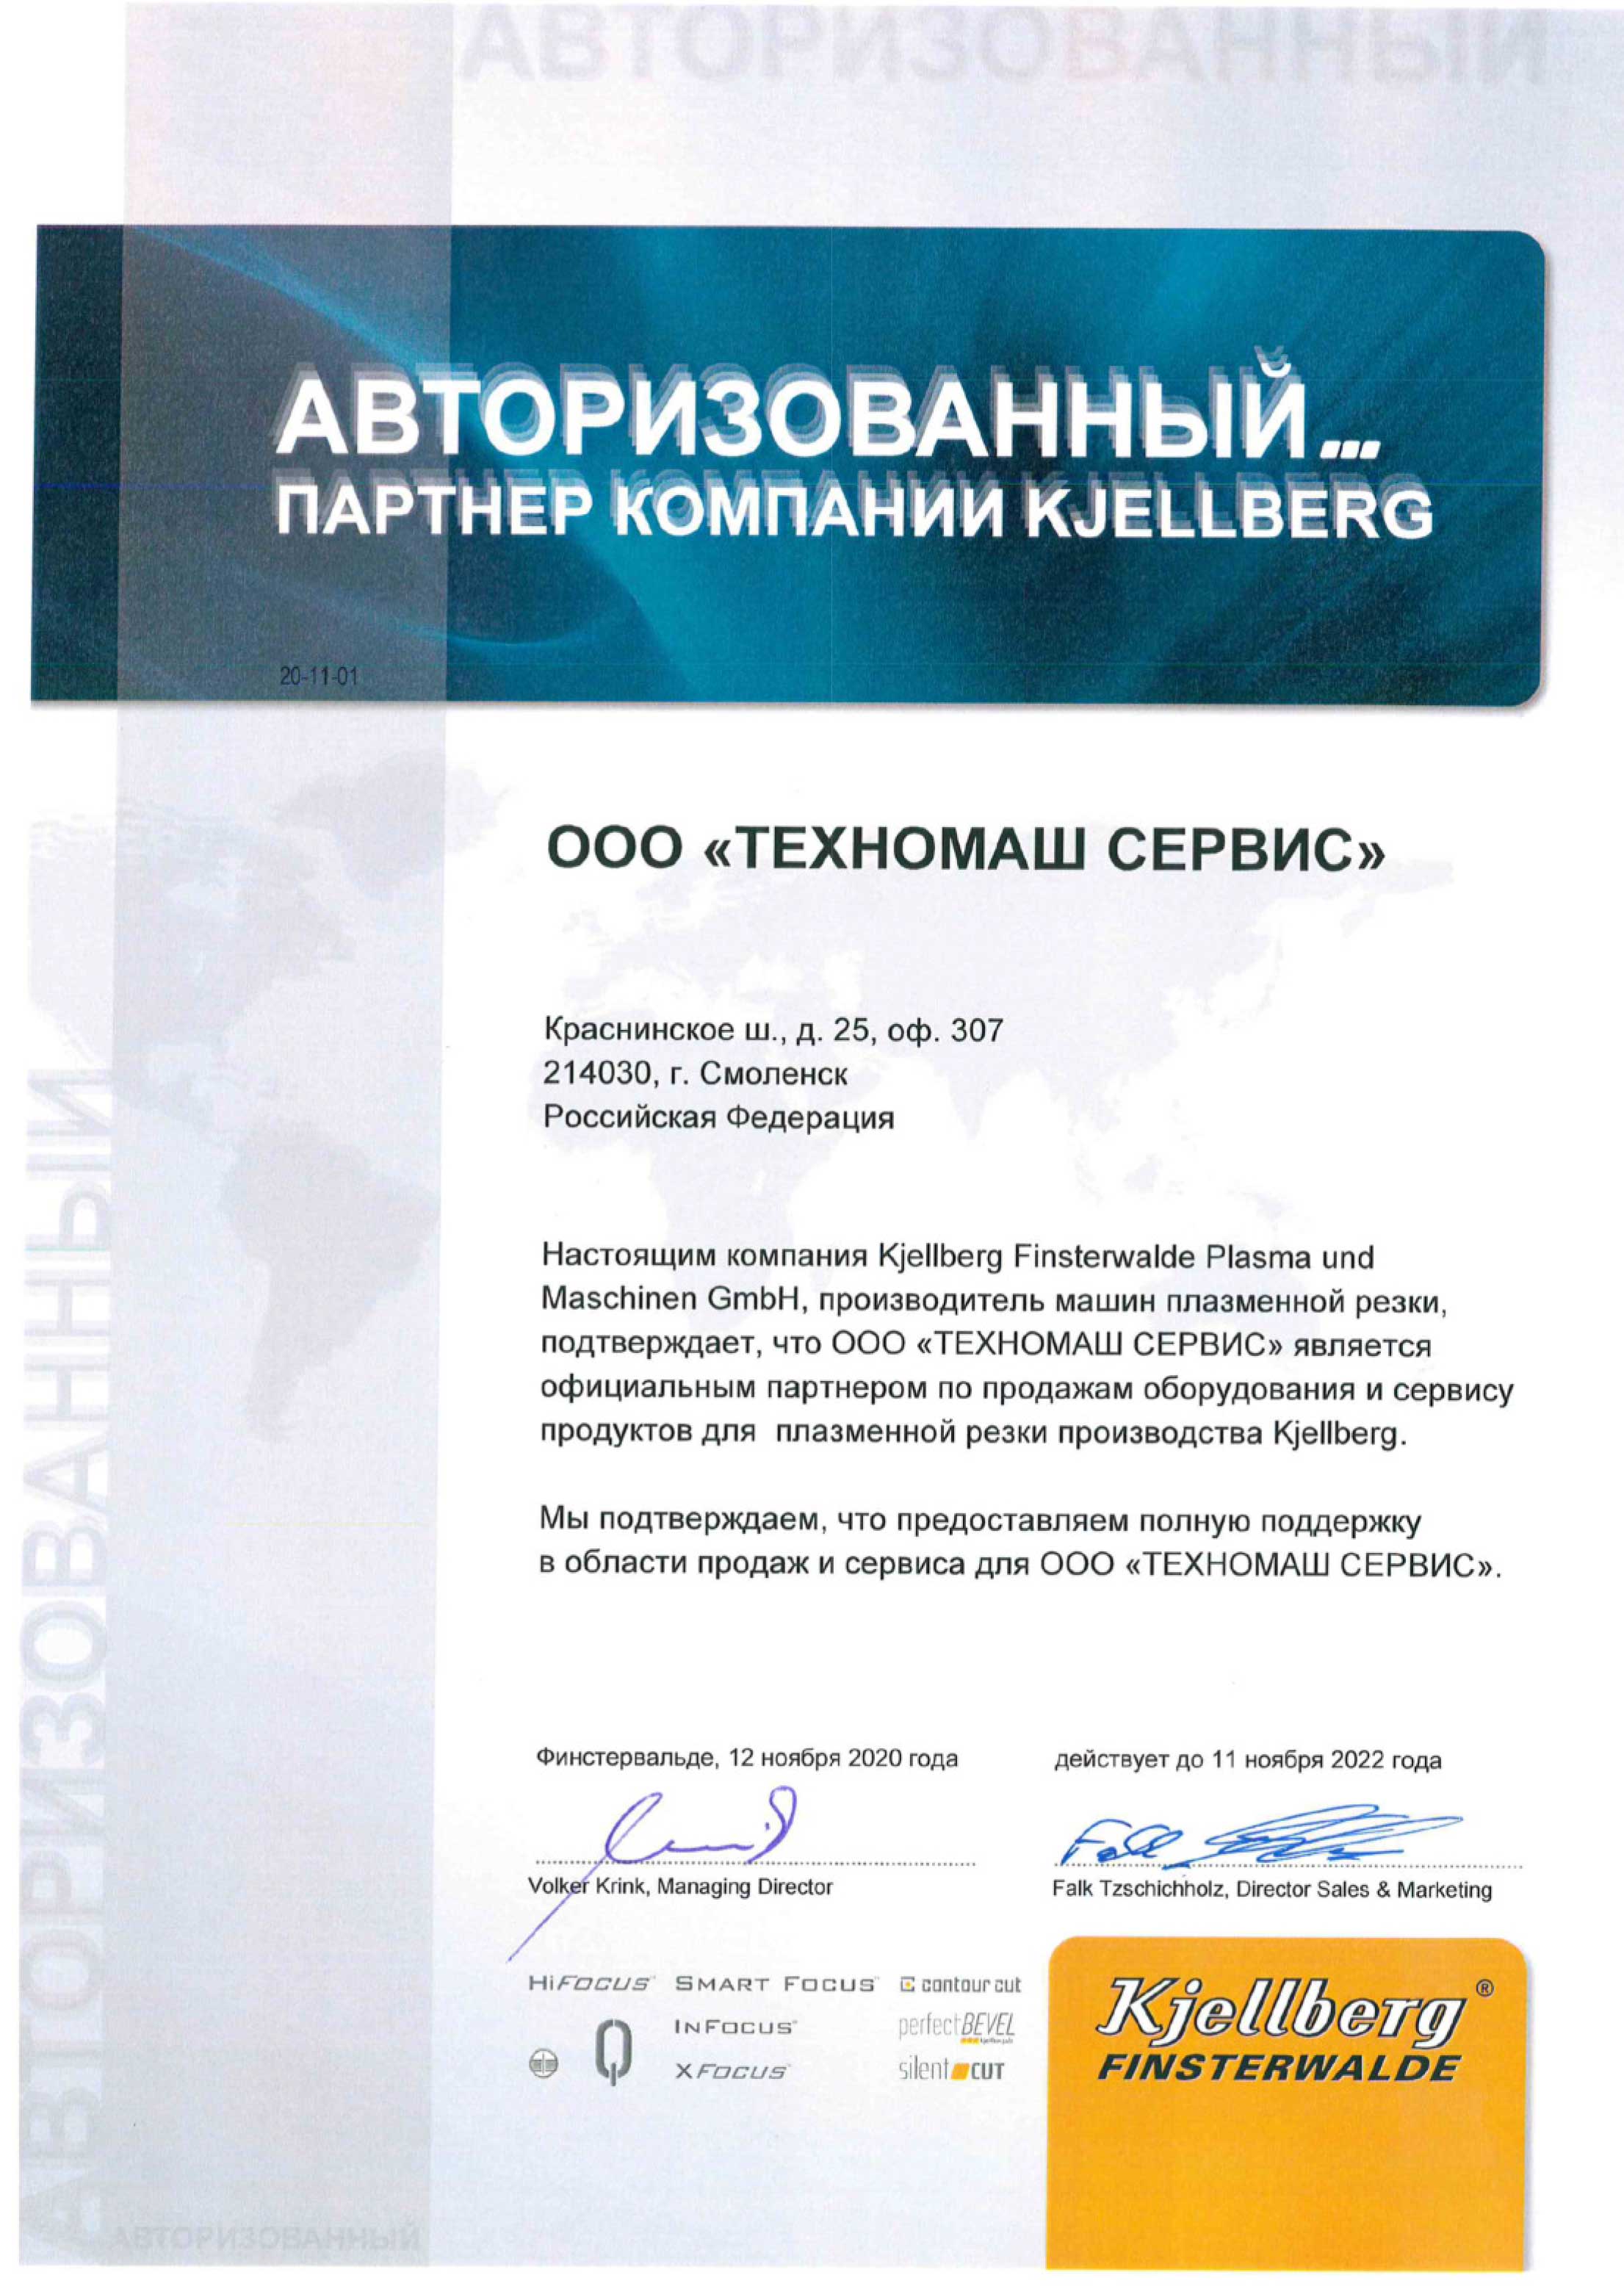 Сертификат авторизованного партнёра Kjellberg